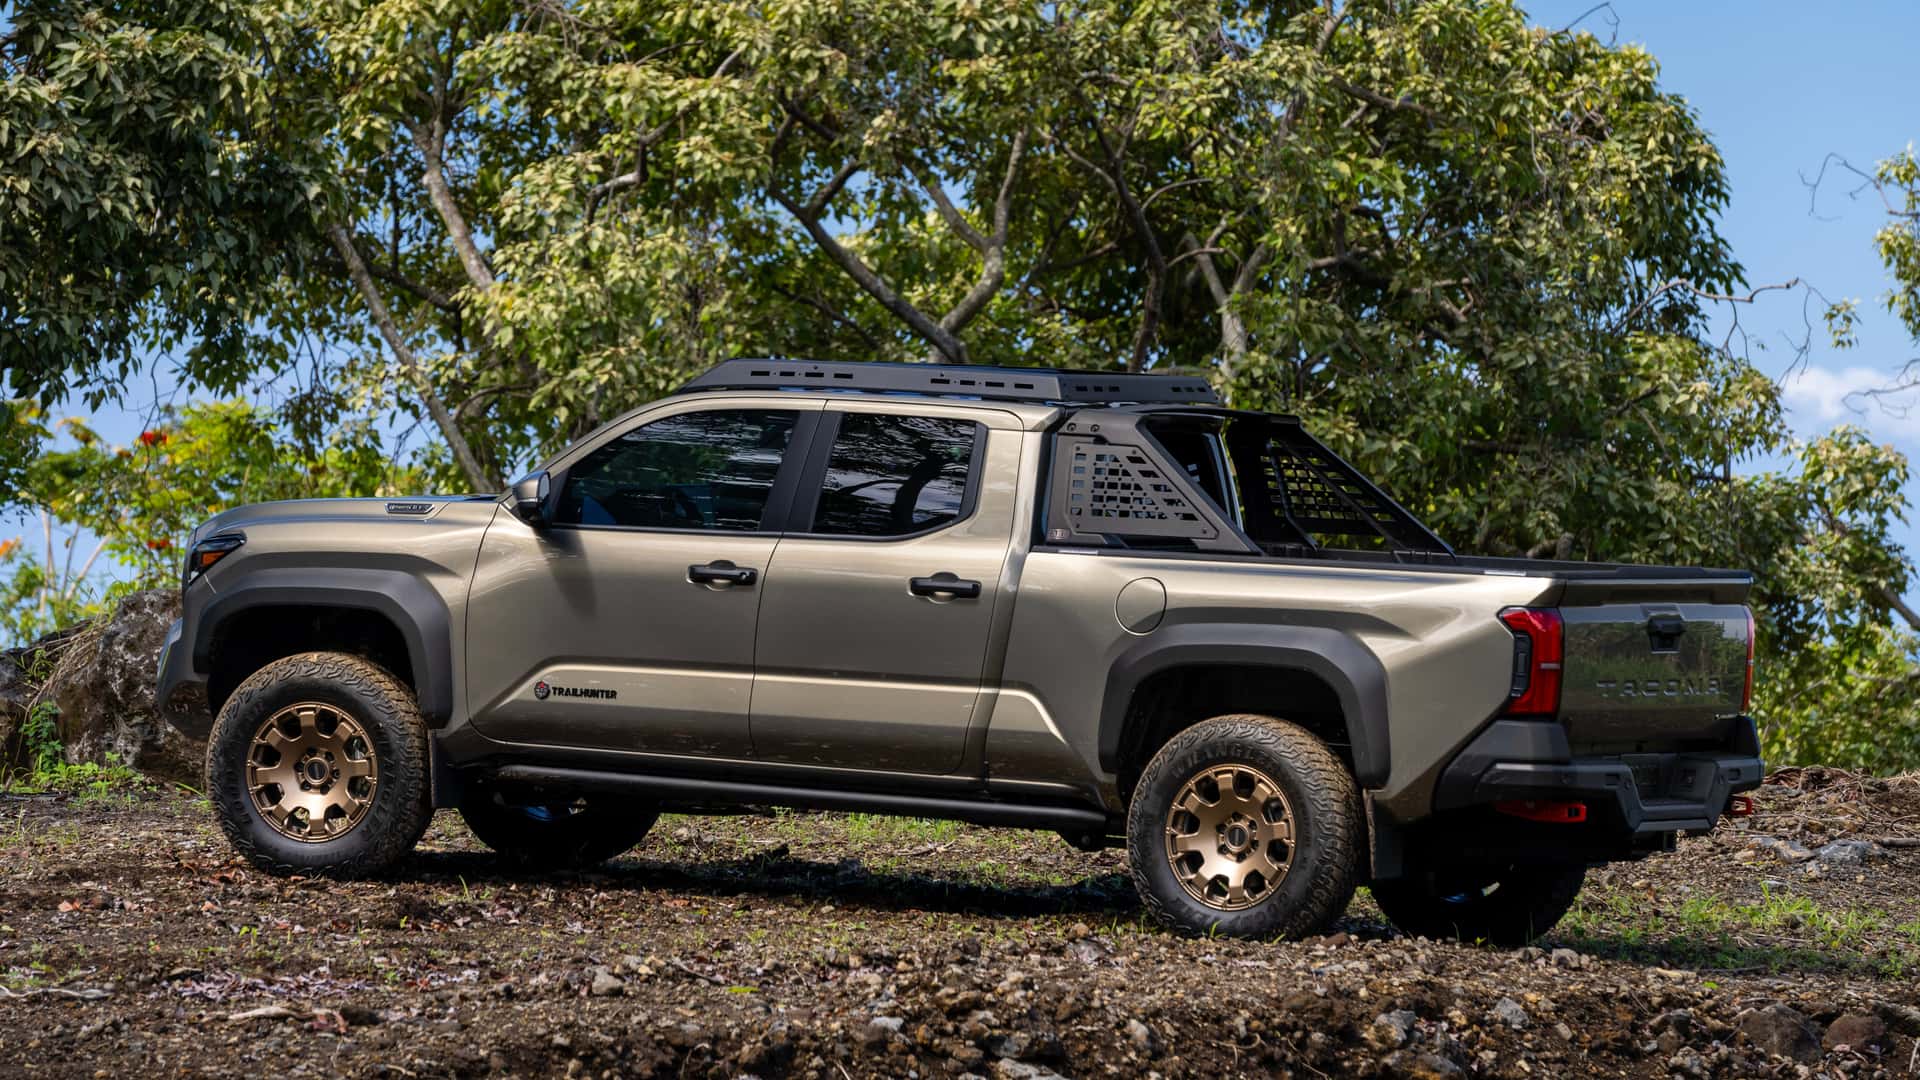 Toyota офіційно представила оновлений пікап Tacoma